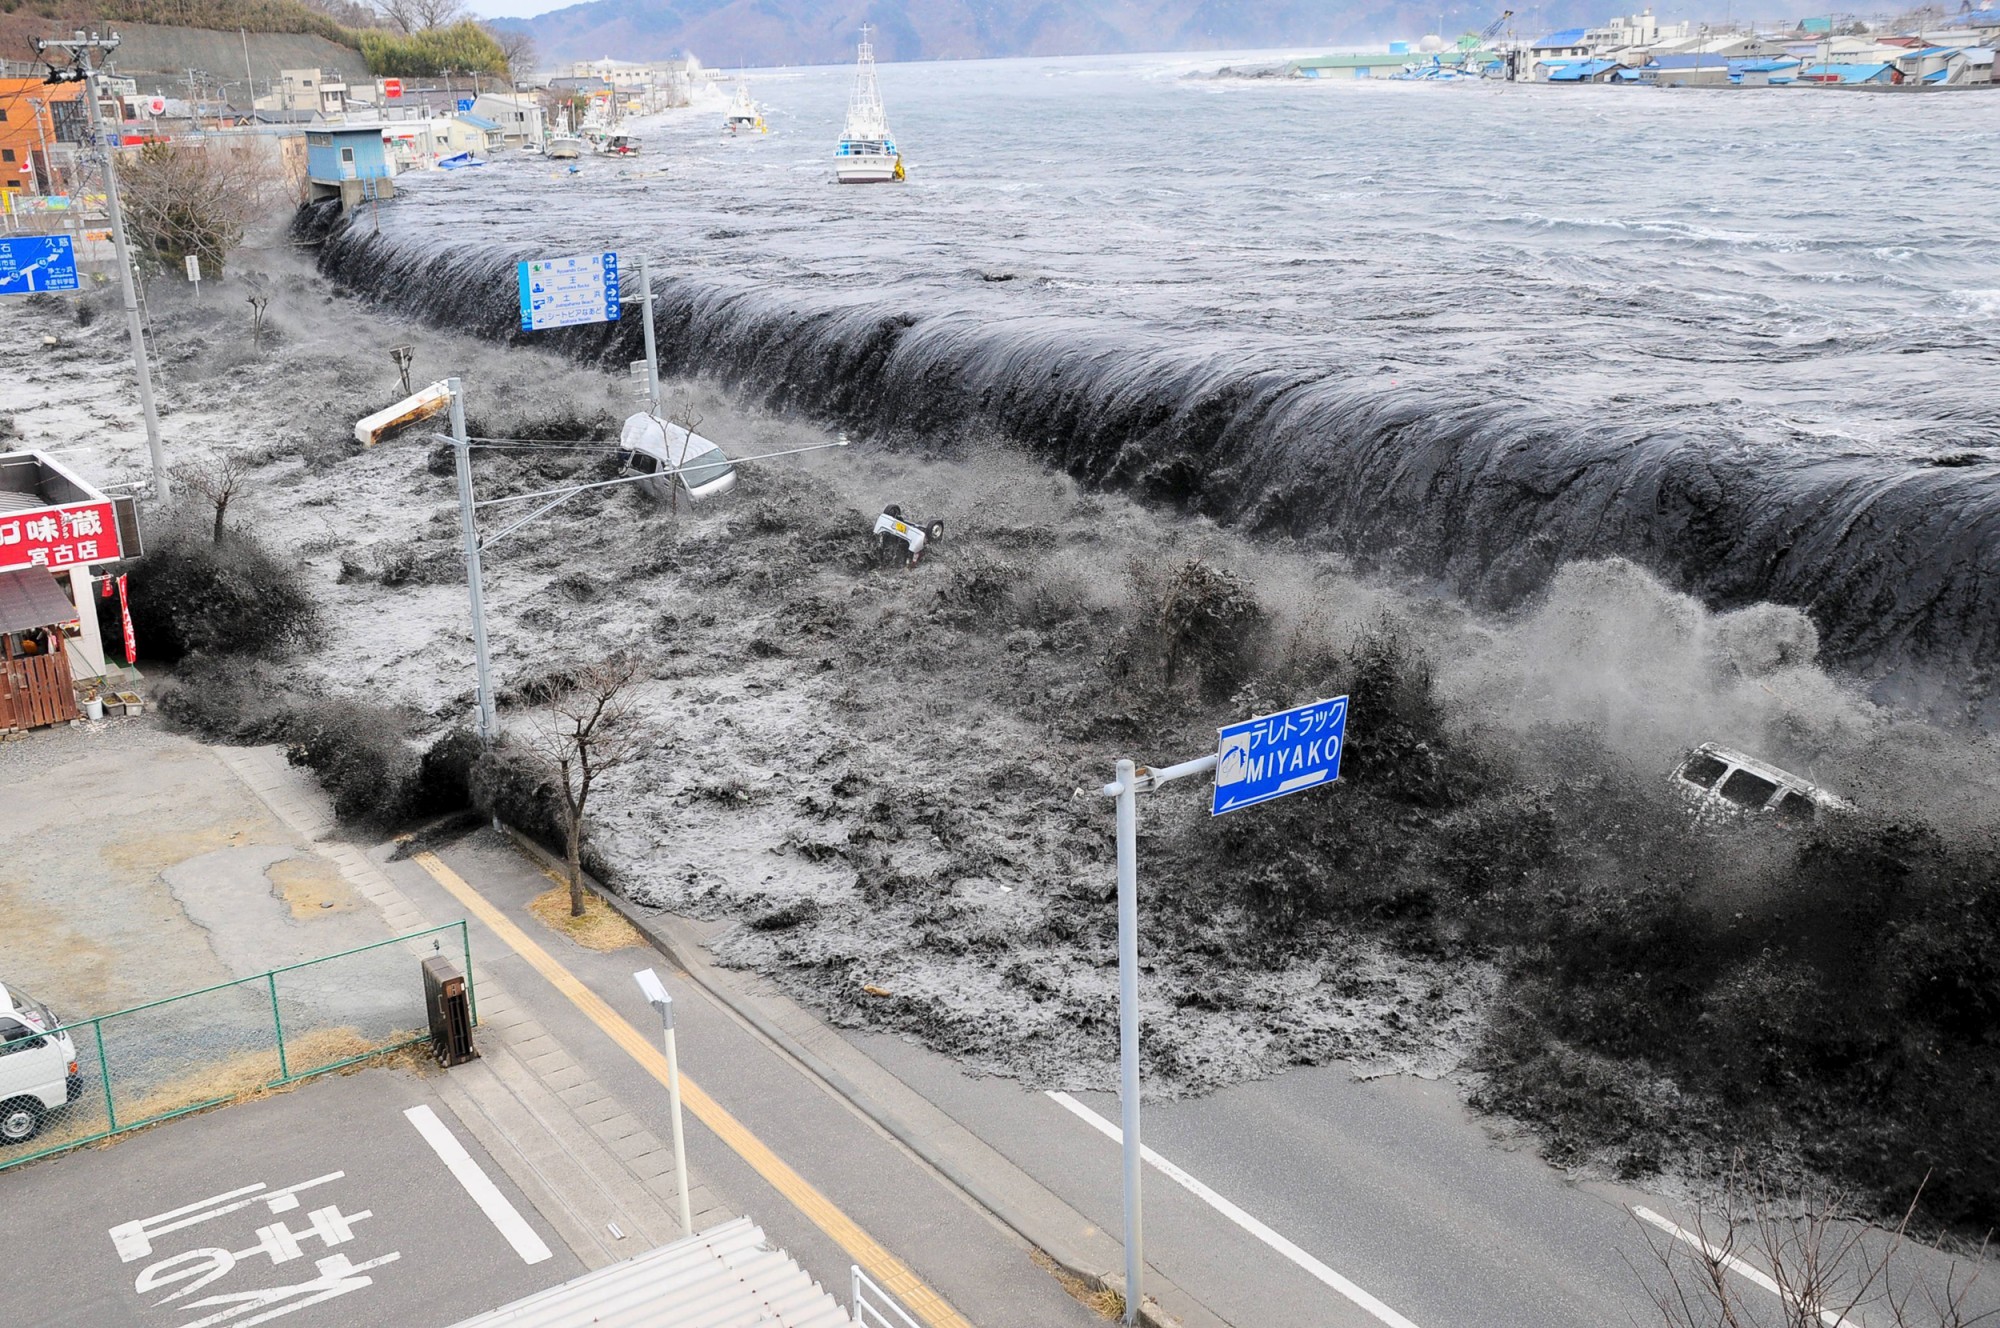 181204-japan-tsunami-earthquake-cs-920a.jpg